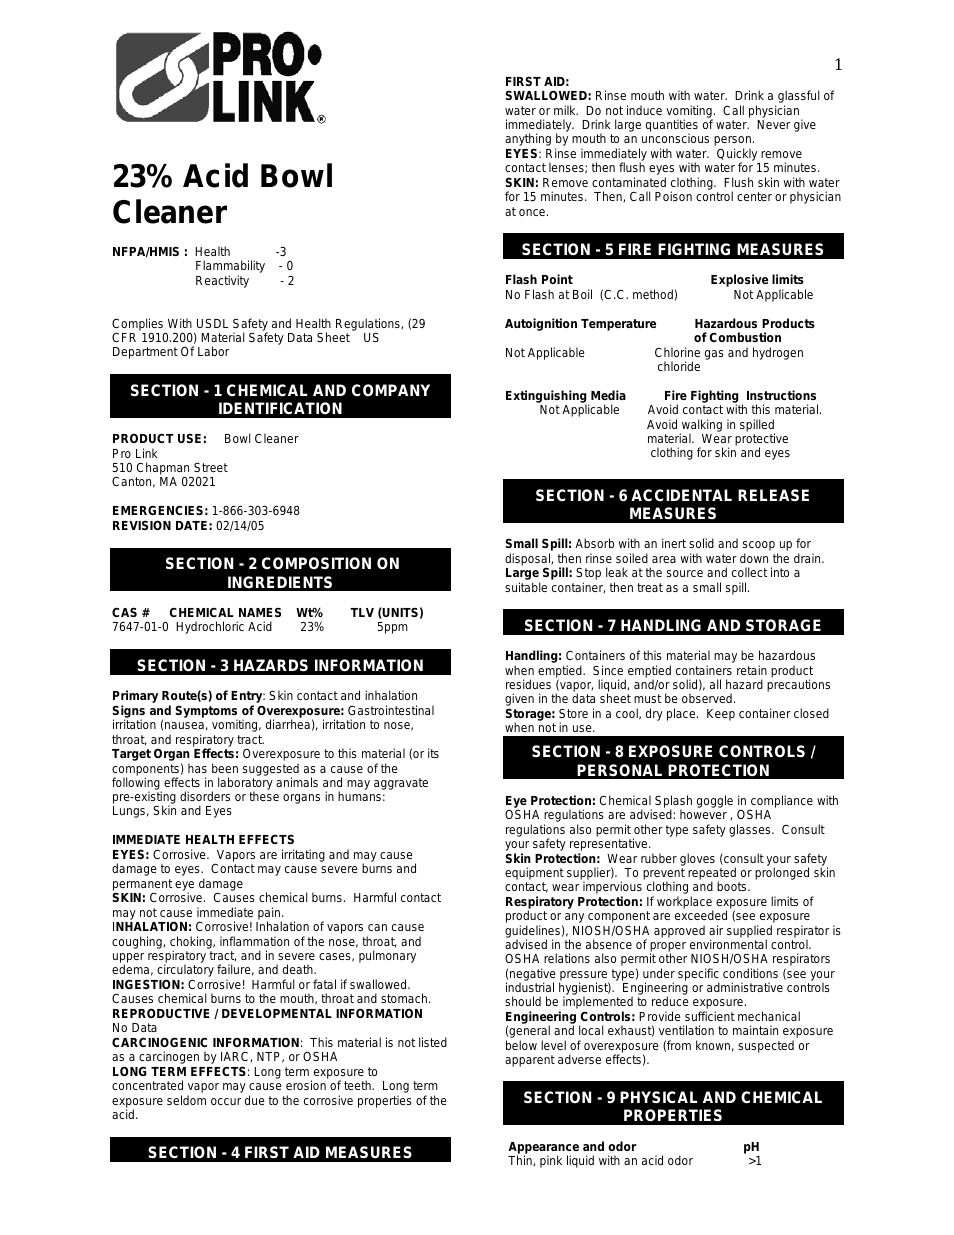 23% Acid Bowl Cleaner R230